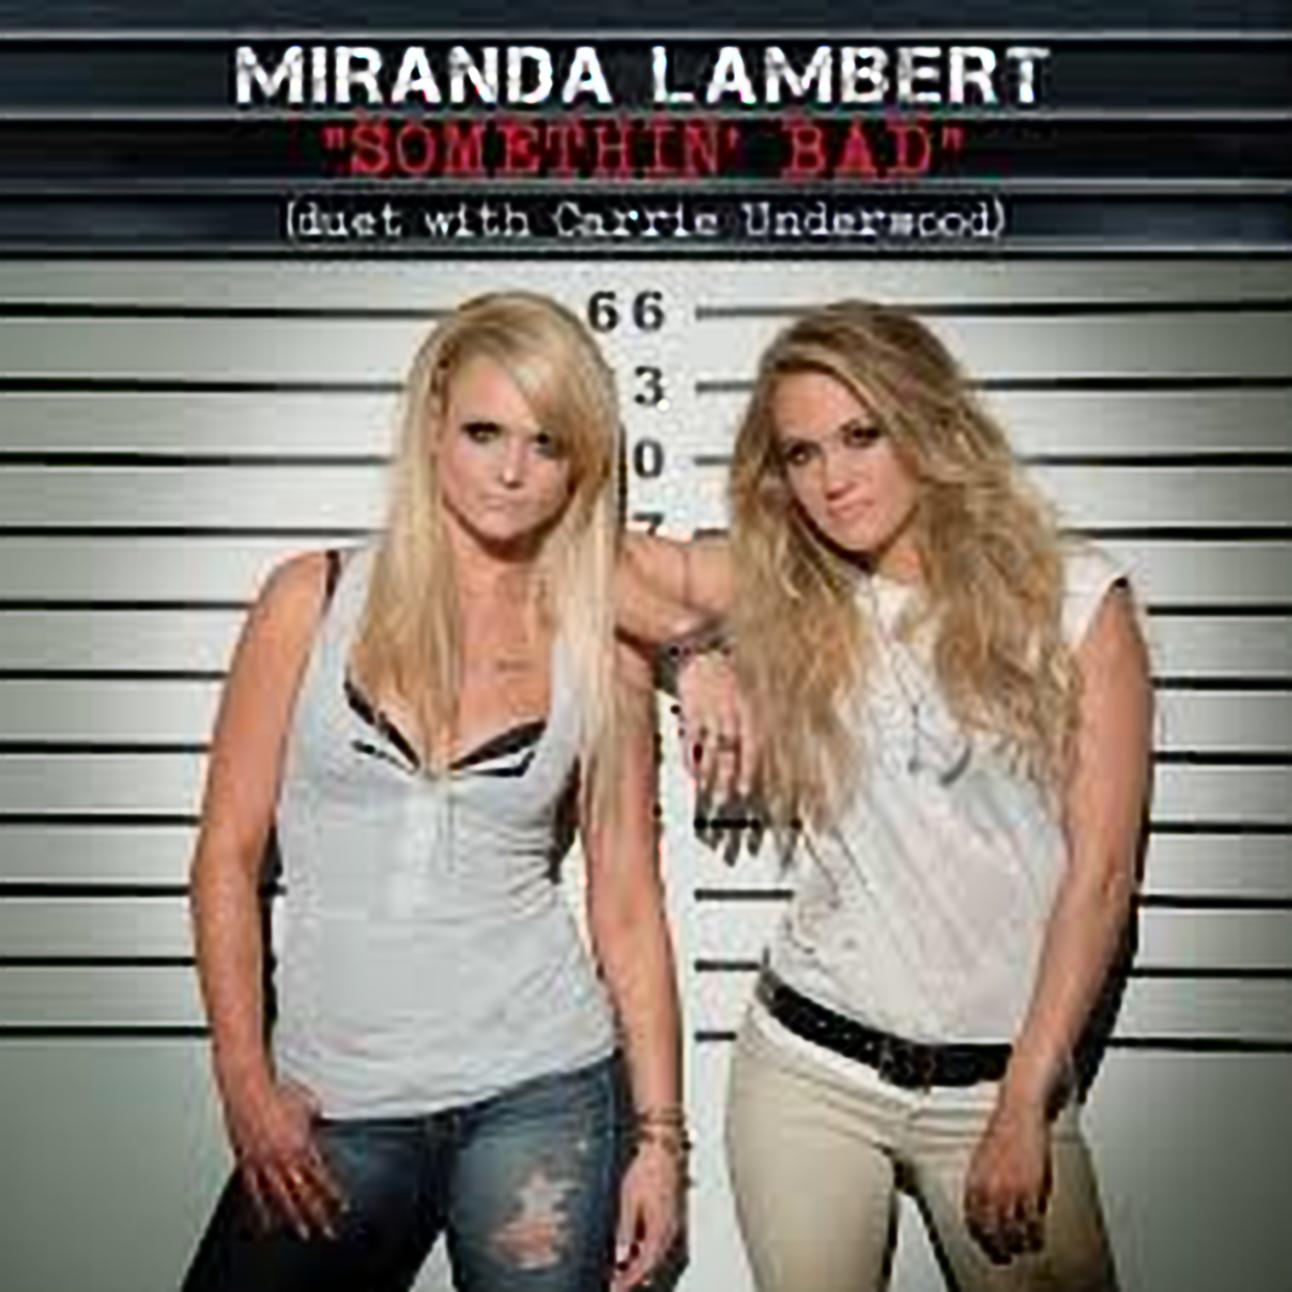 Miranda Lambert – Somethin’ Bad (with Carrie Underwood)